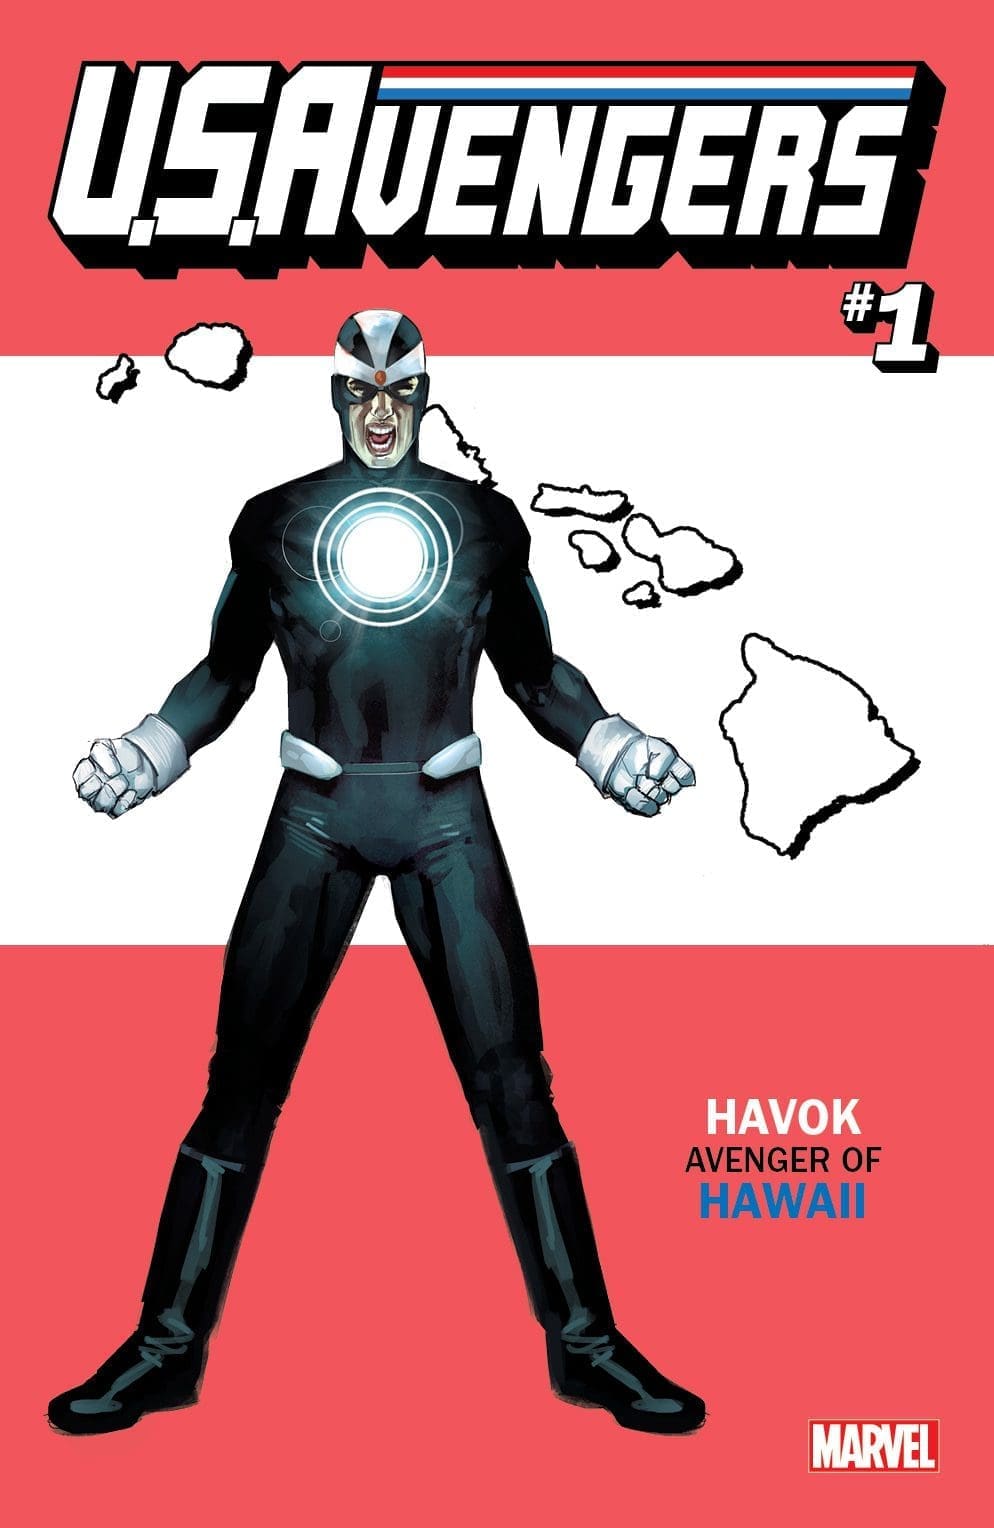 avengers, comic news, comics, marvel comics, USAvengers, variants